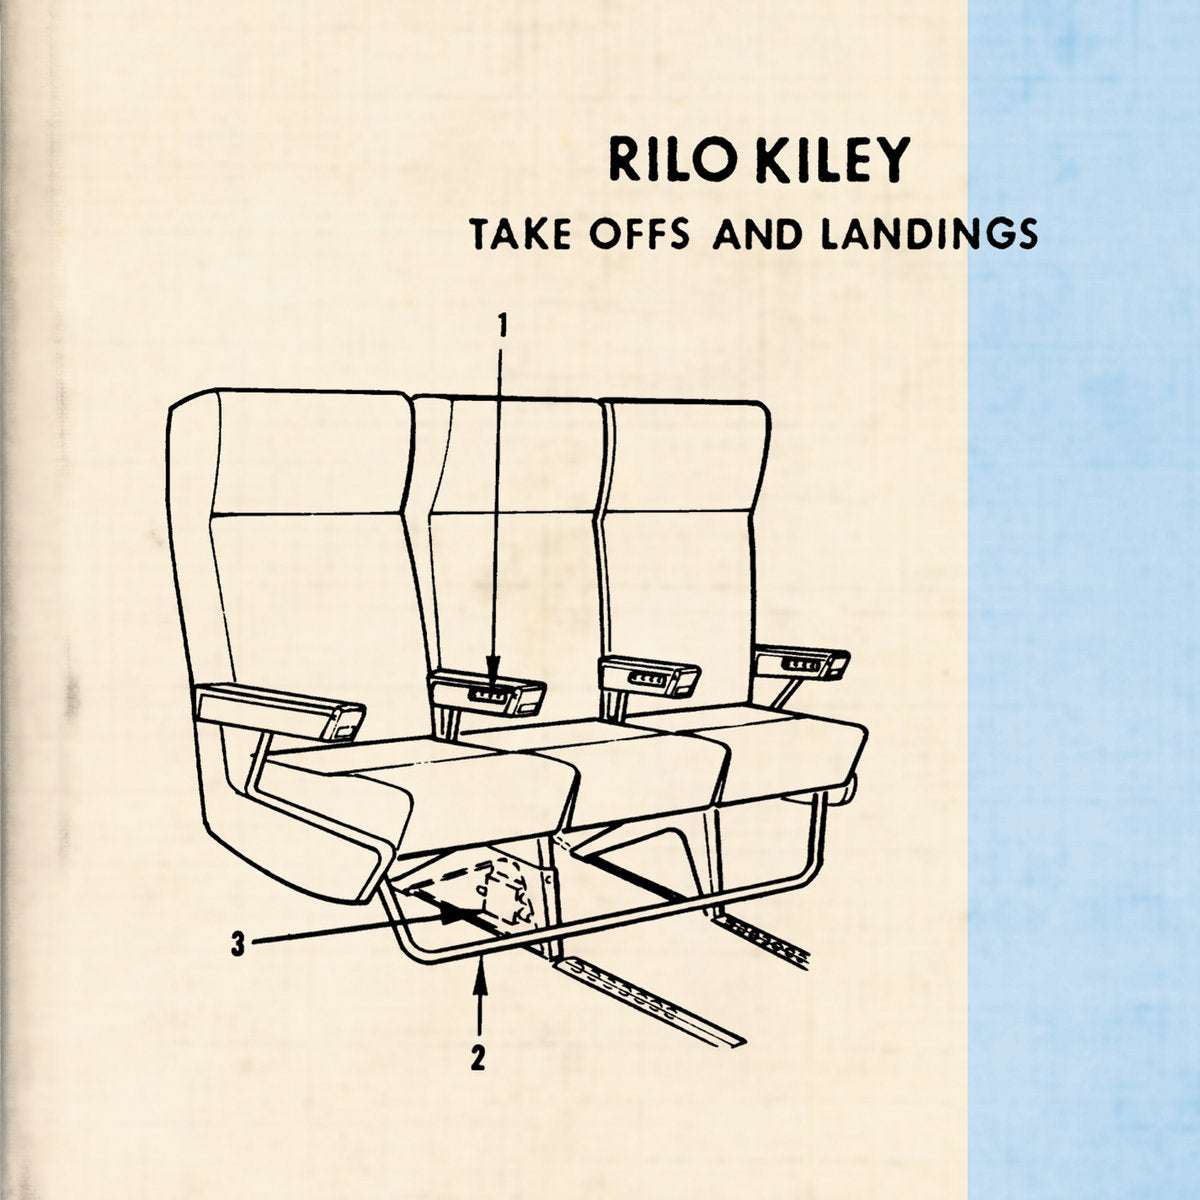 RILO KILEY - TAKE OFFS AND LANDINGS Vinyl LP